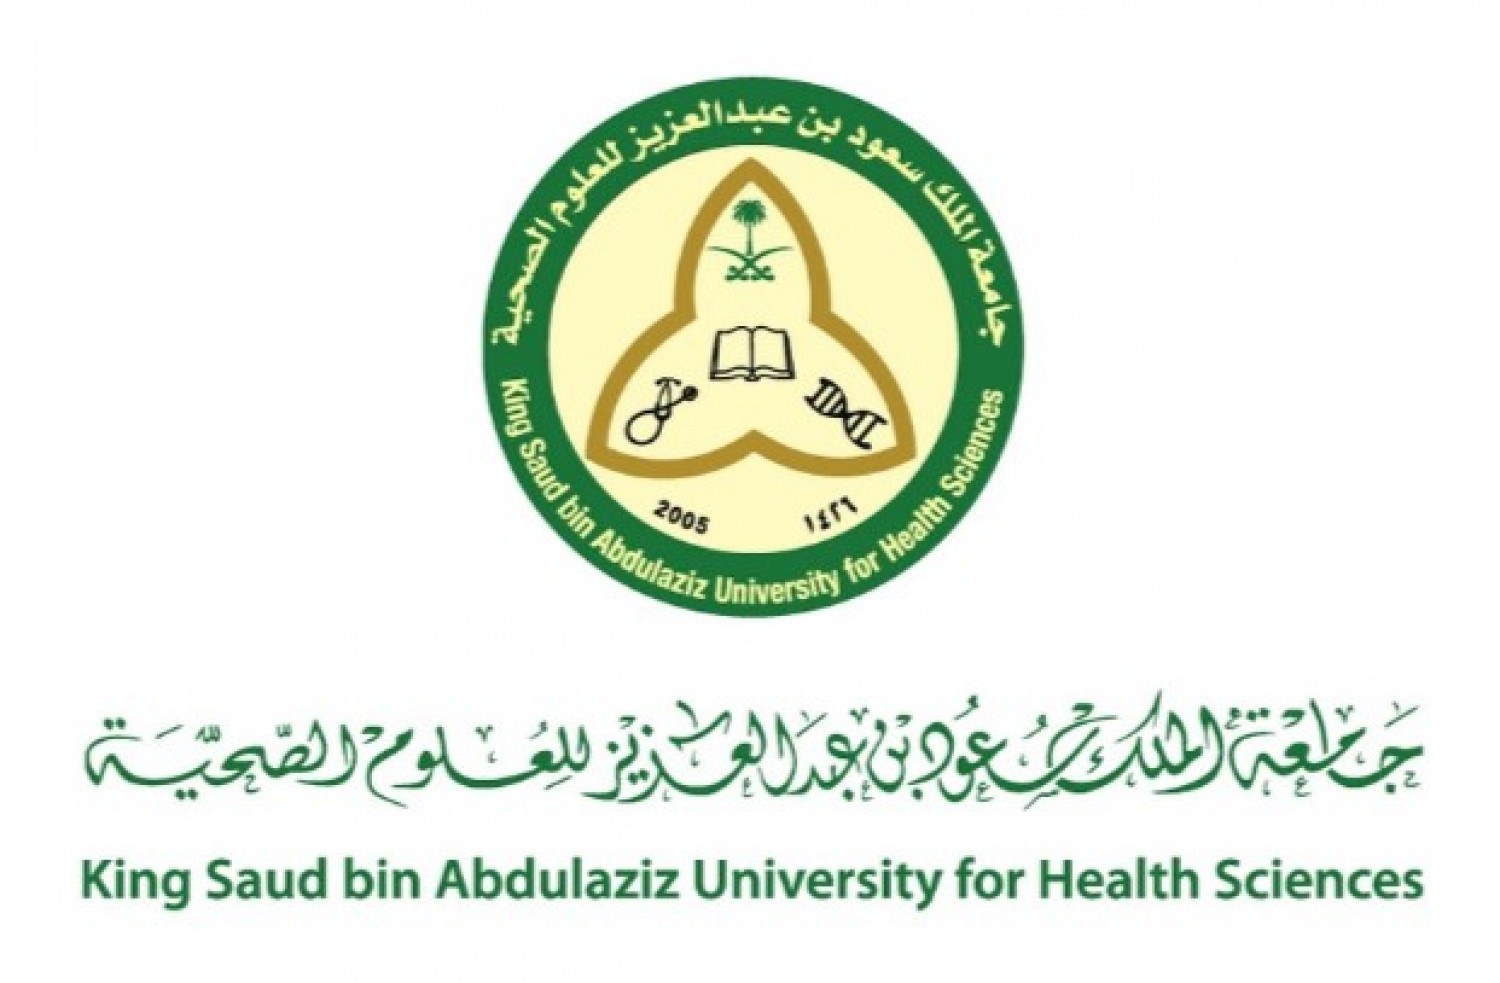 الملك سعود للعلوم الصحية - الاعلان عن وظائف شاغرة لدى جامعة الملك سعود للعلوم الصحية